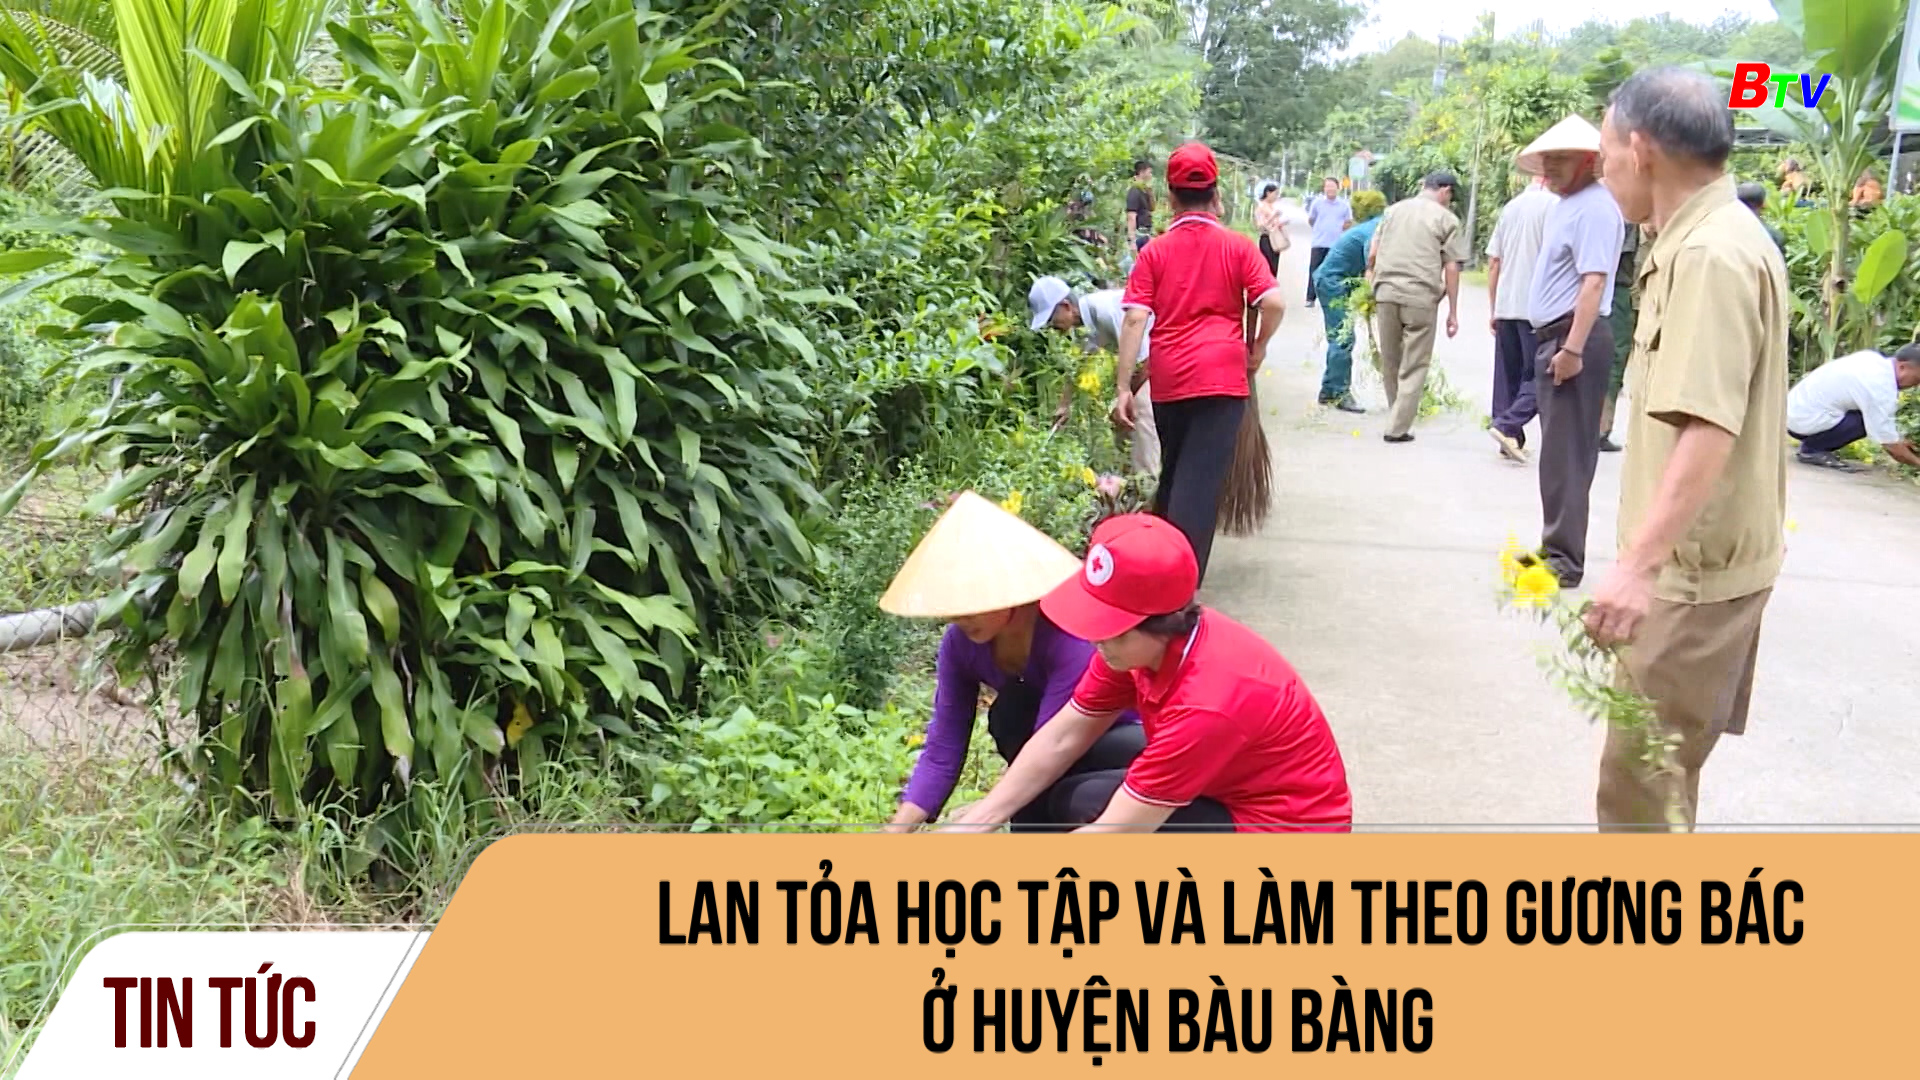 Lan tỏa học tập và làm theo gương Bác ở huyện Bàu Bàng